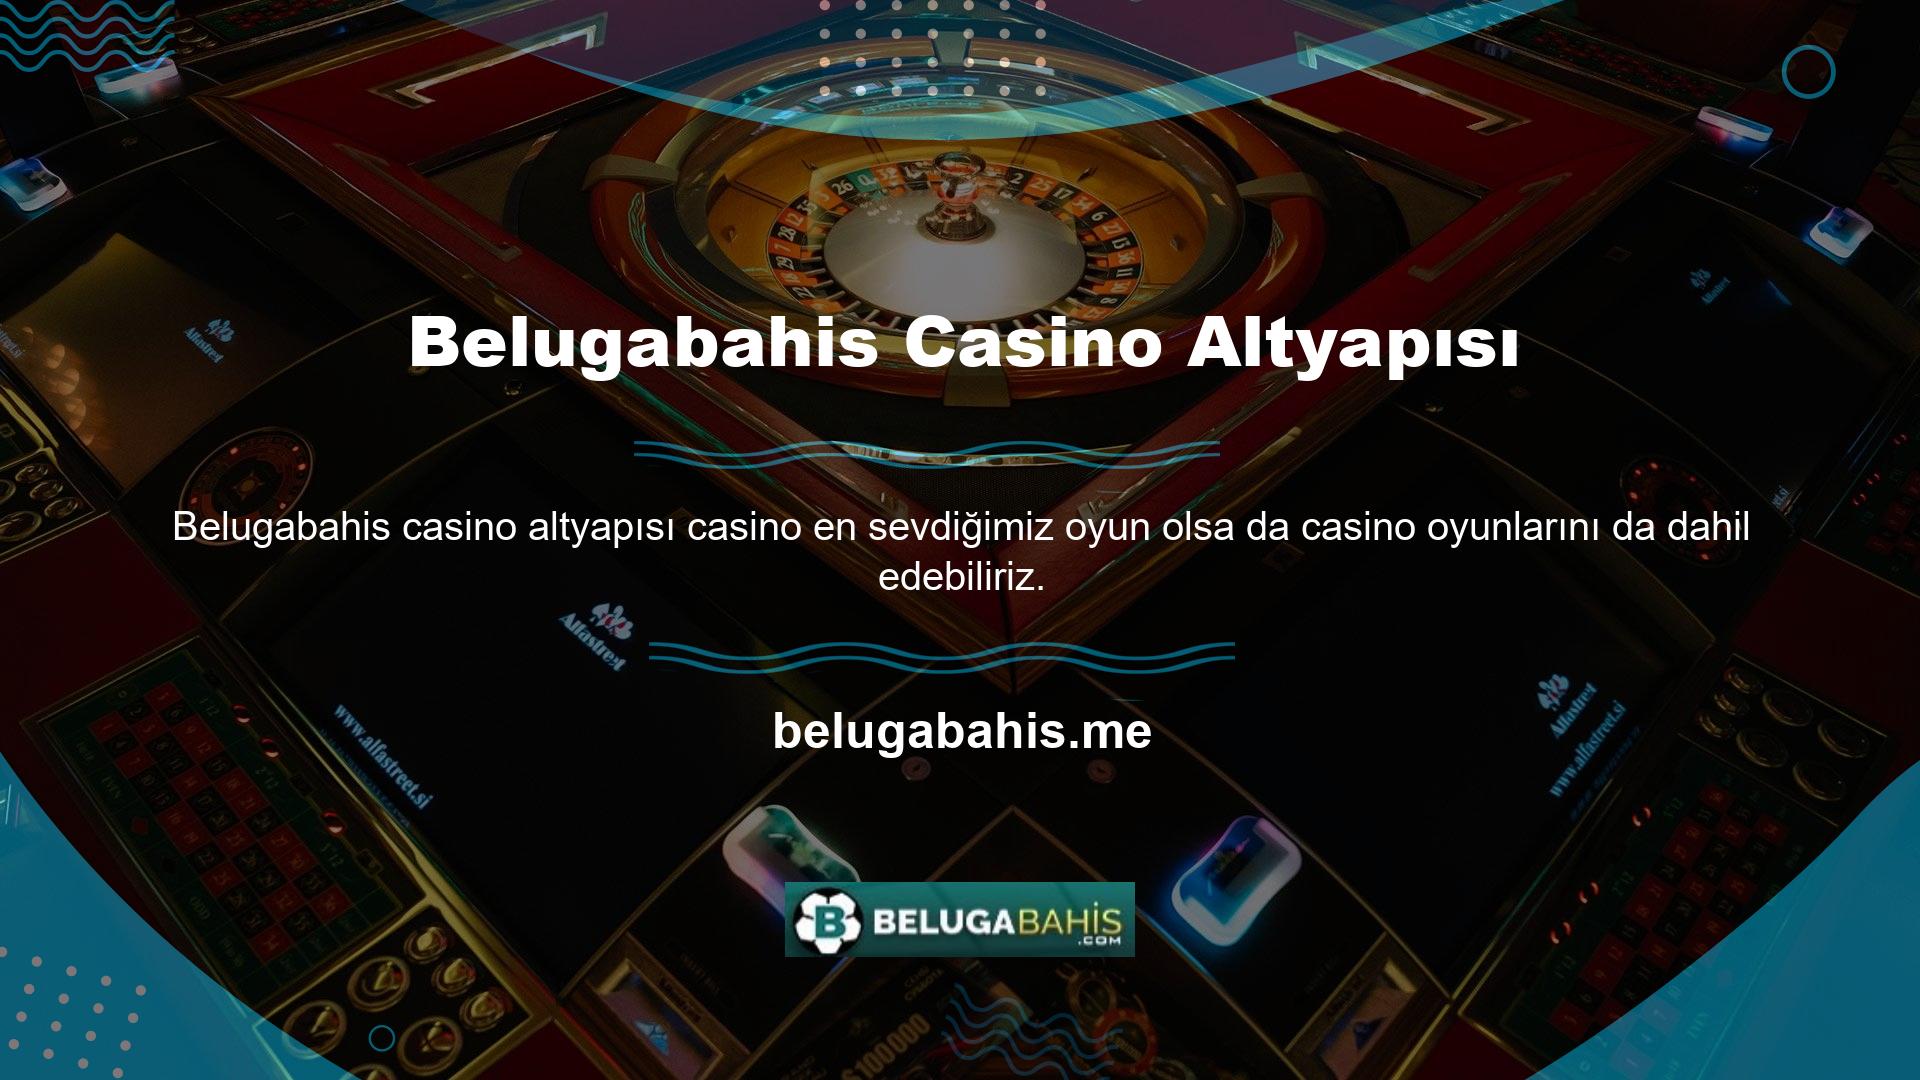 Belugabahis mevcut adresi, çok çeşitli casino içeriğine erişmenizi sağlar